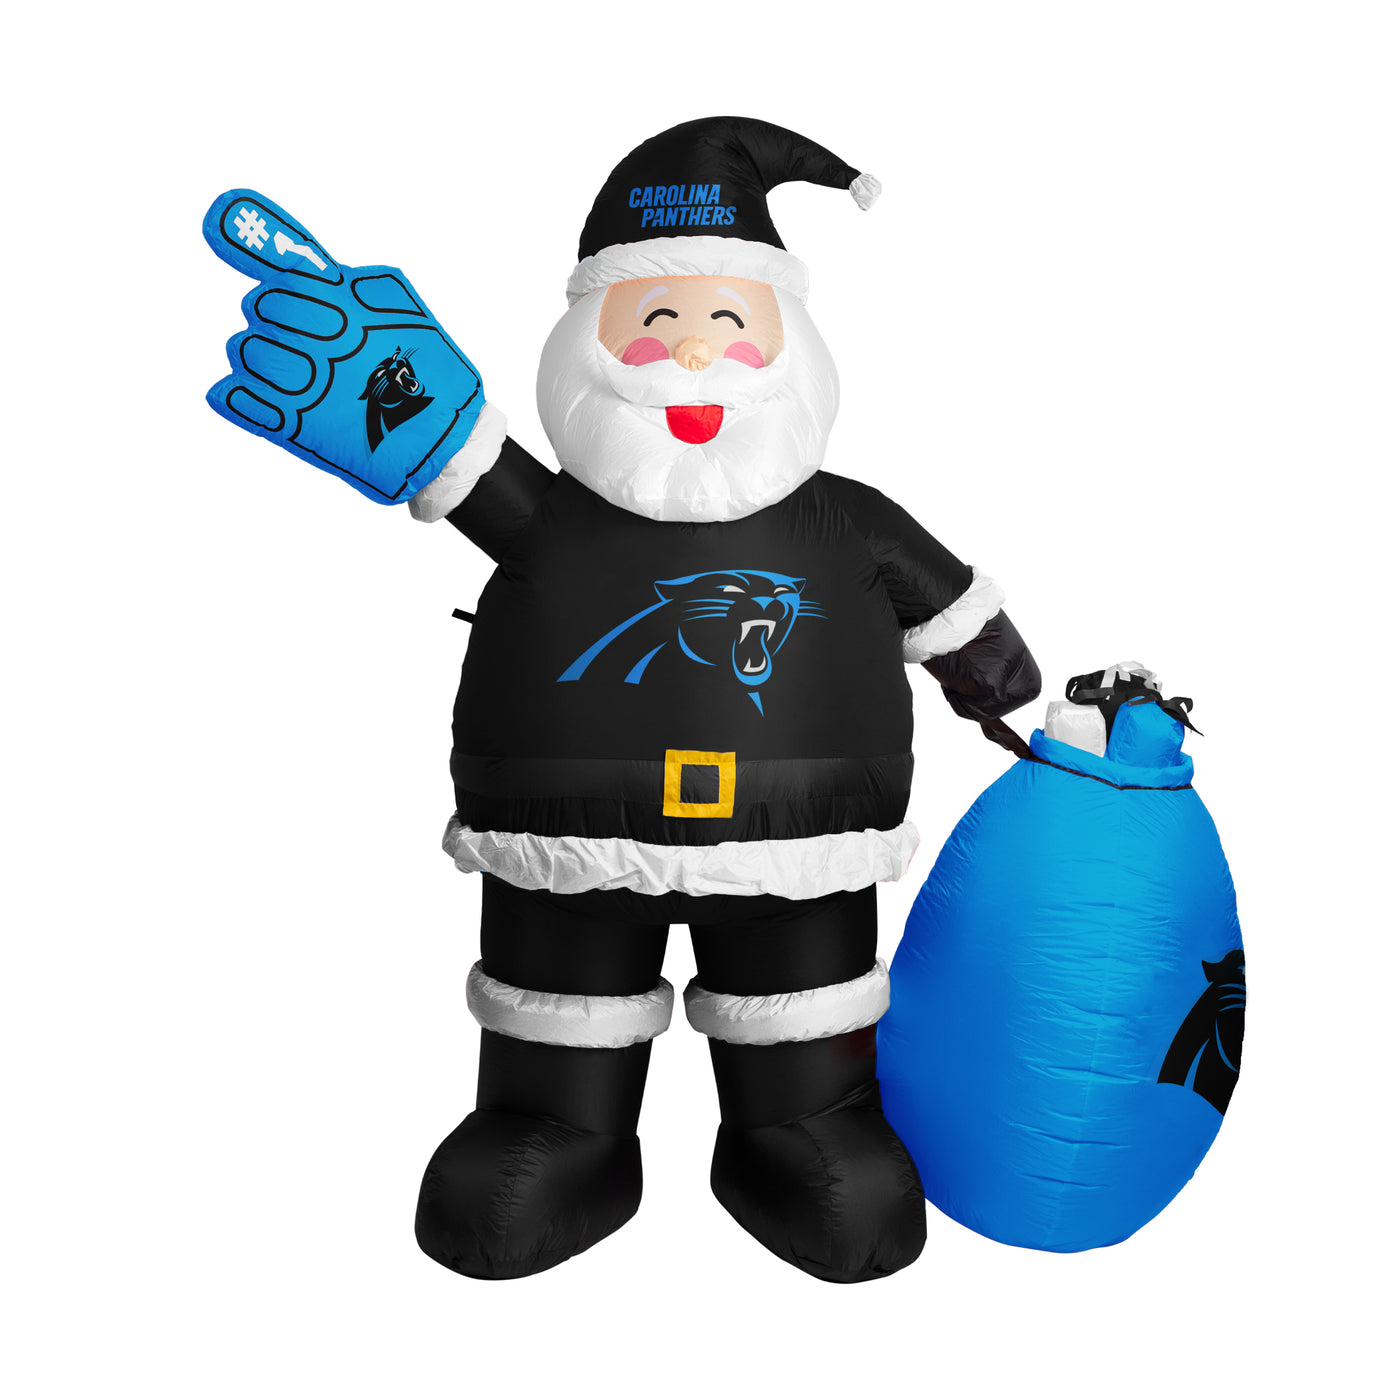 Carolina Panthers Inflatable Santa